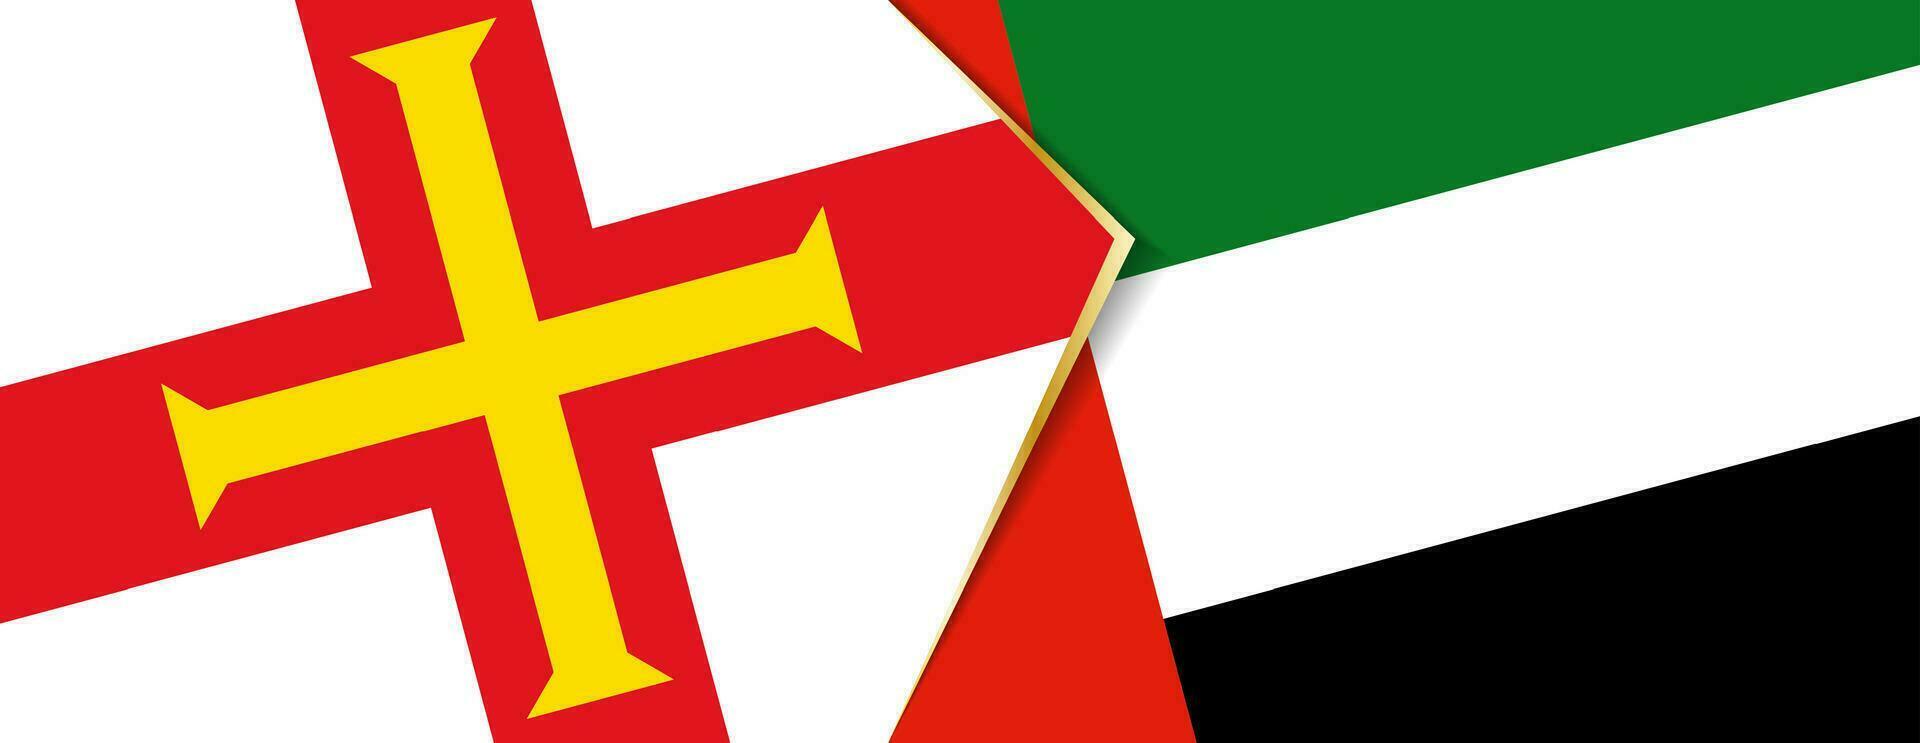 guernsey y unido árabe emiratos banderas, dos vector banderas